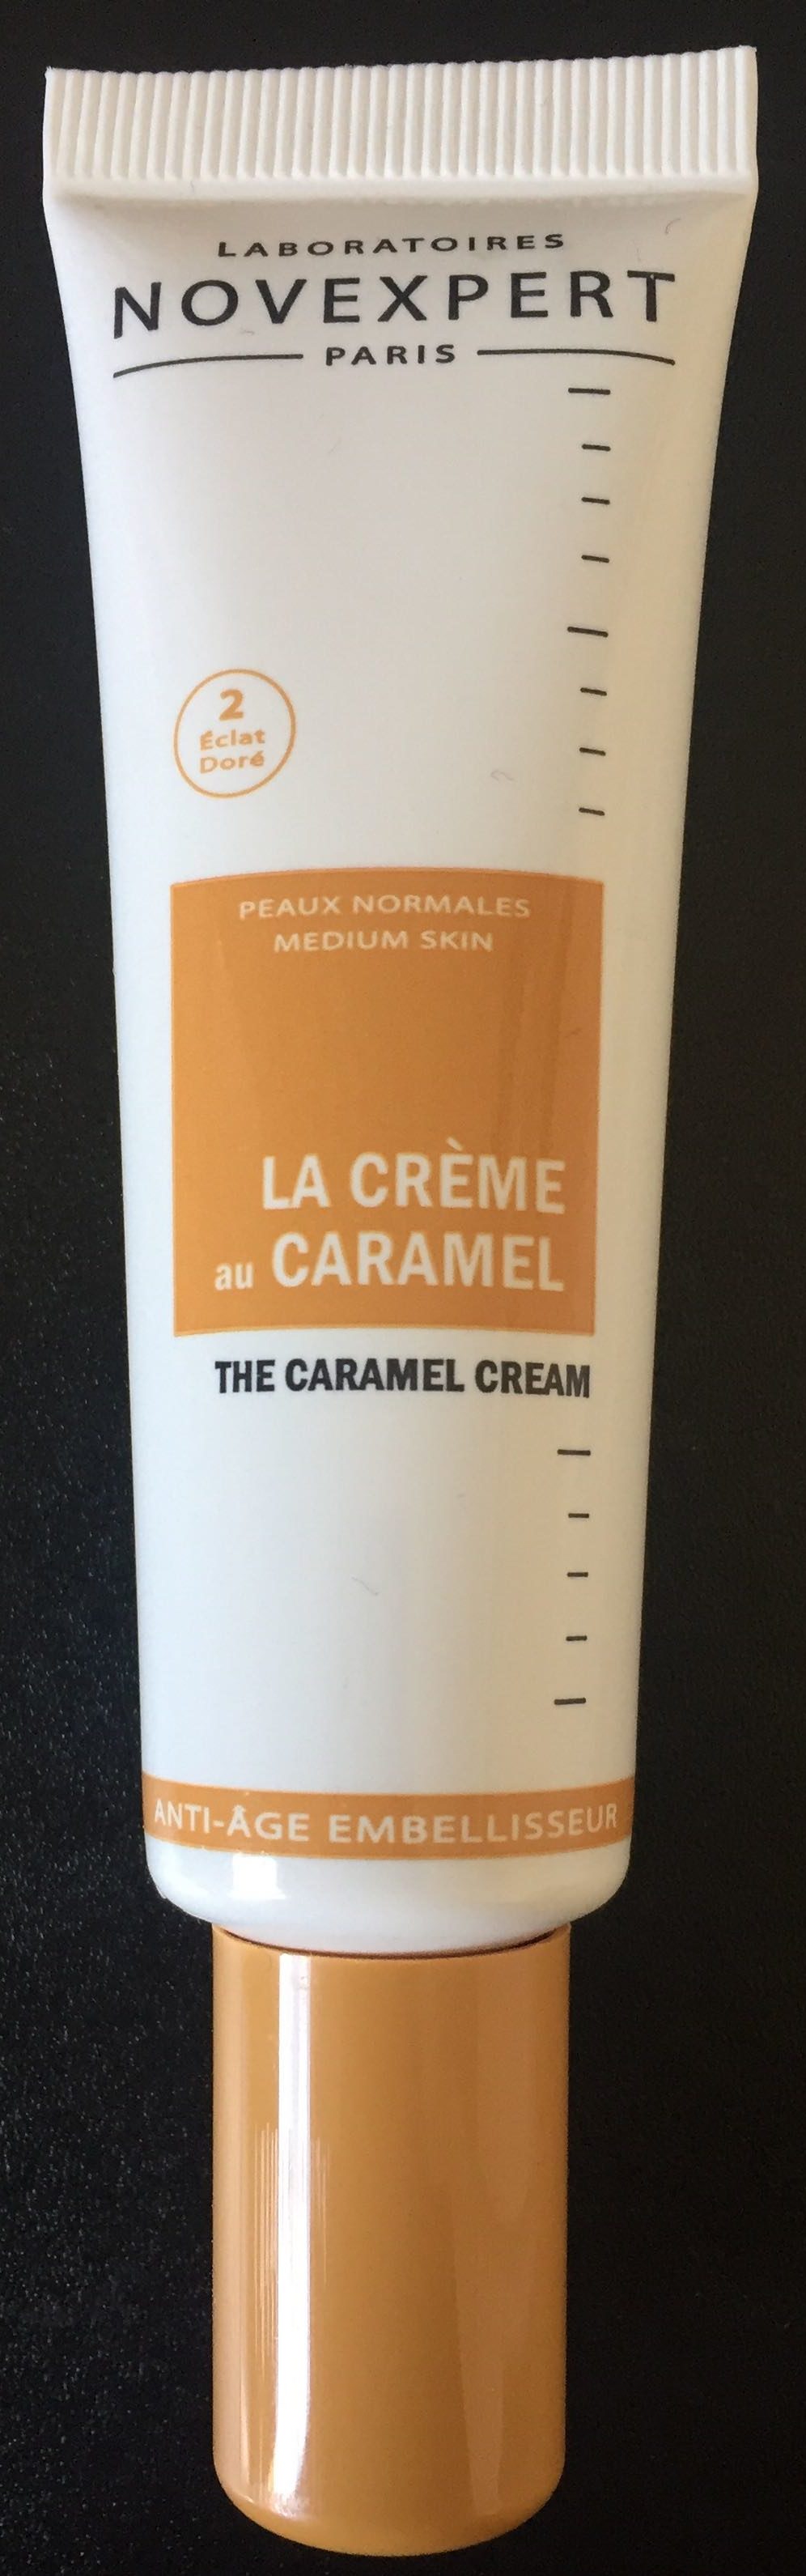 La Crème au Caramel - Produit - fr